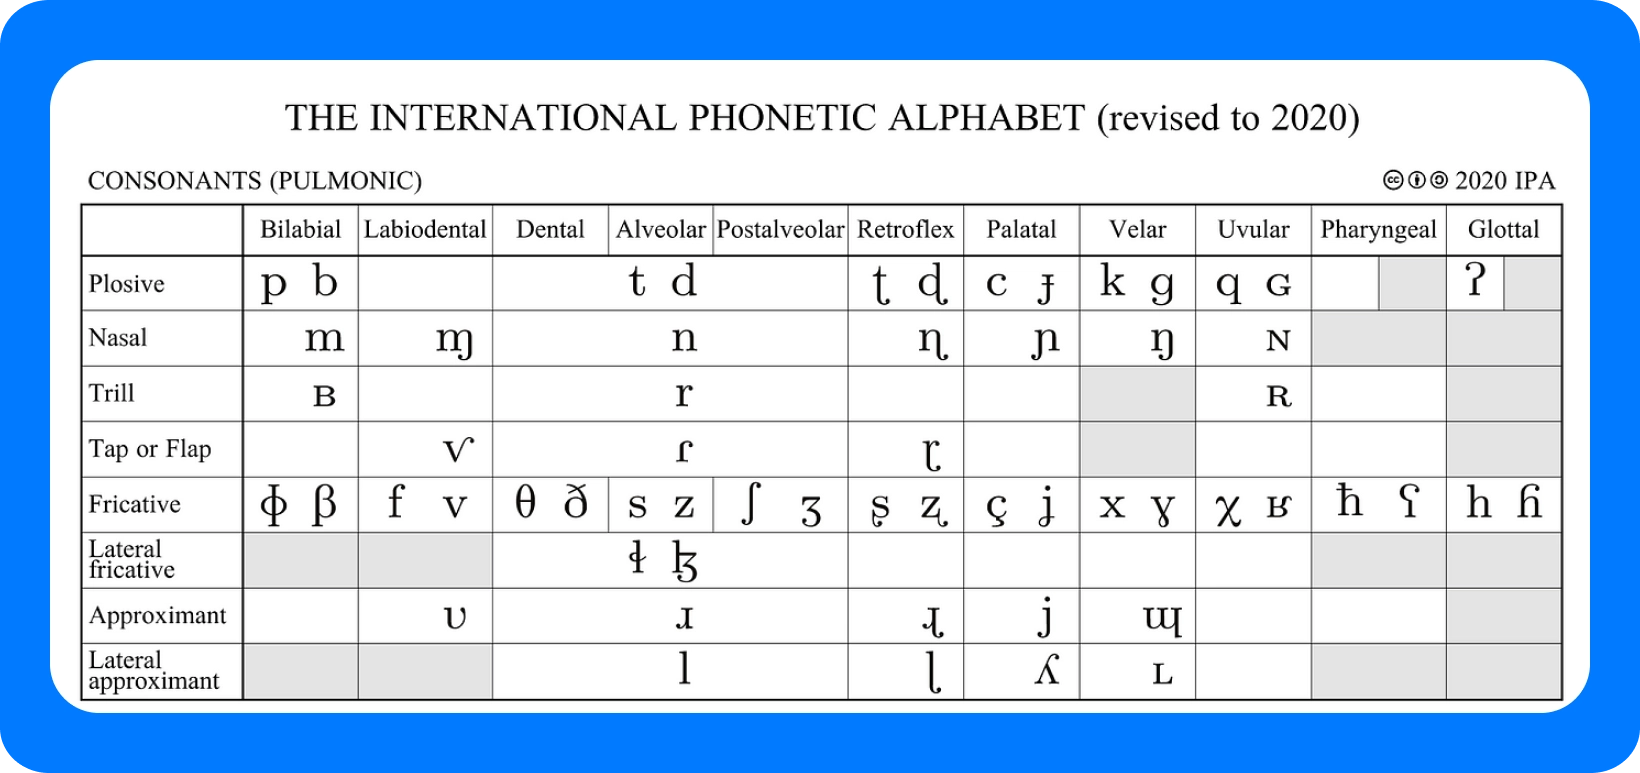 Tabla del Alfabeto Fonético Internacional para las consonantes, revisada en 2020, que detalla los puntos de articulación.